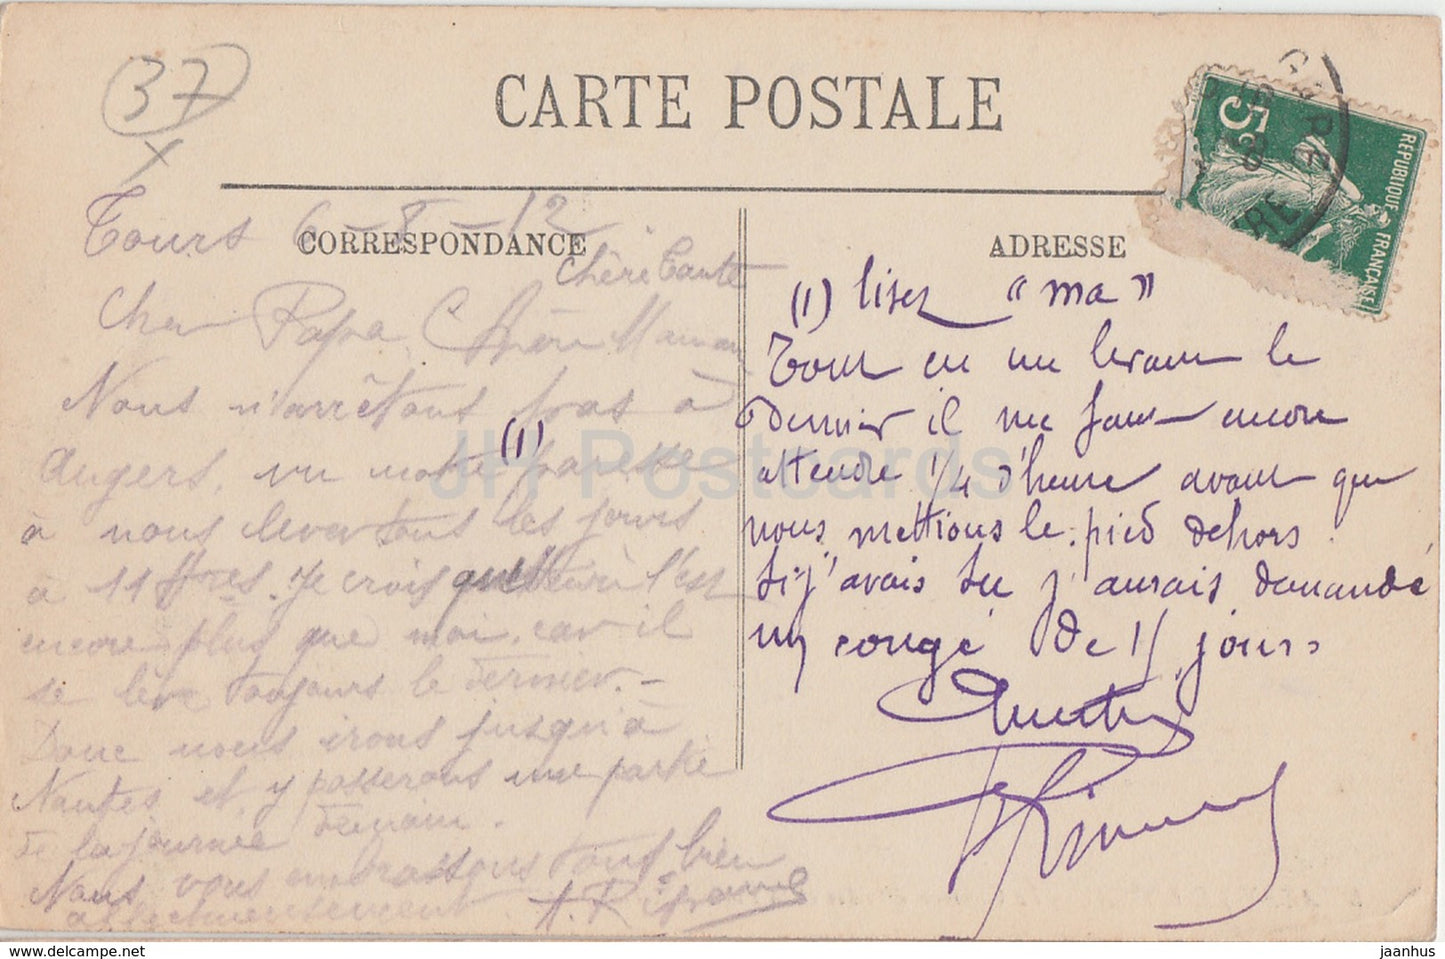 Azay Le Rideau - Le Chateau d'Indre et la Facade Meridionale - castle - 5 - old postcard - 1912 - France - used